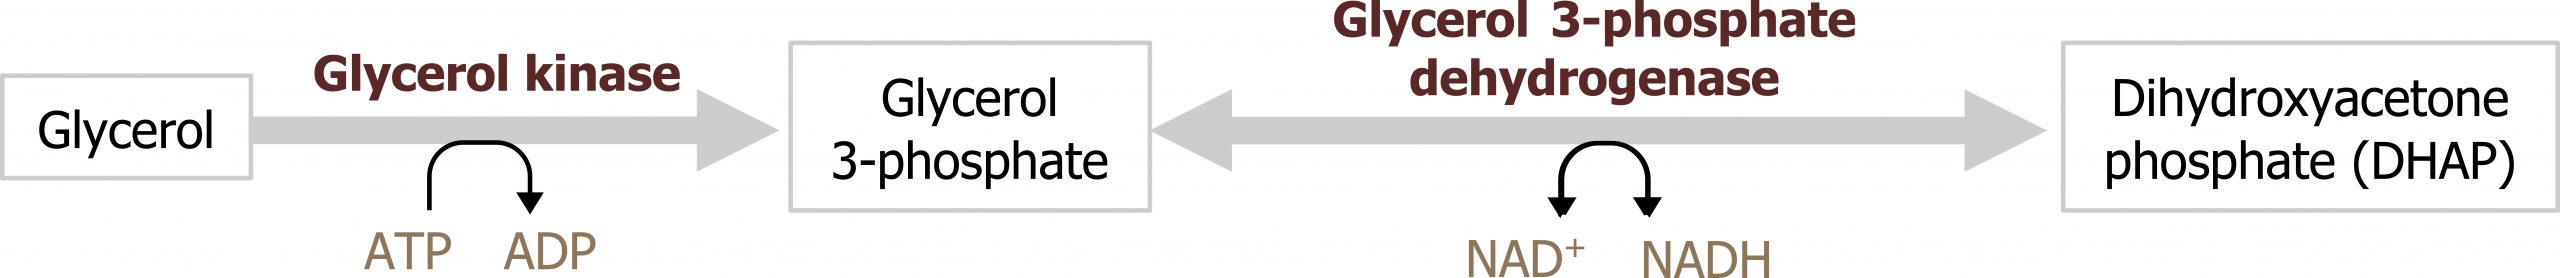 Glycerol arrow with enzyme glycerol kinase and ATP arrow ADP to glycerol 3-phosphate bidirectional arrow with enzyme glycerol 3-phosphate dehydrogenase and NAD+ bidirectional arrow NADH to dihydroxyacetone phosphate (DHAP)